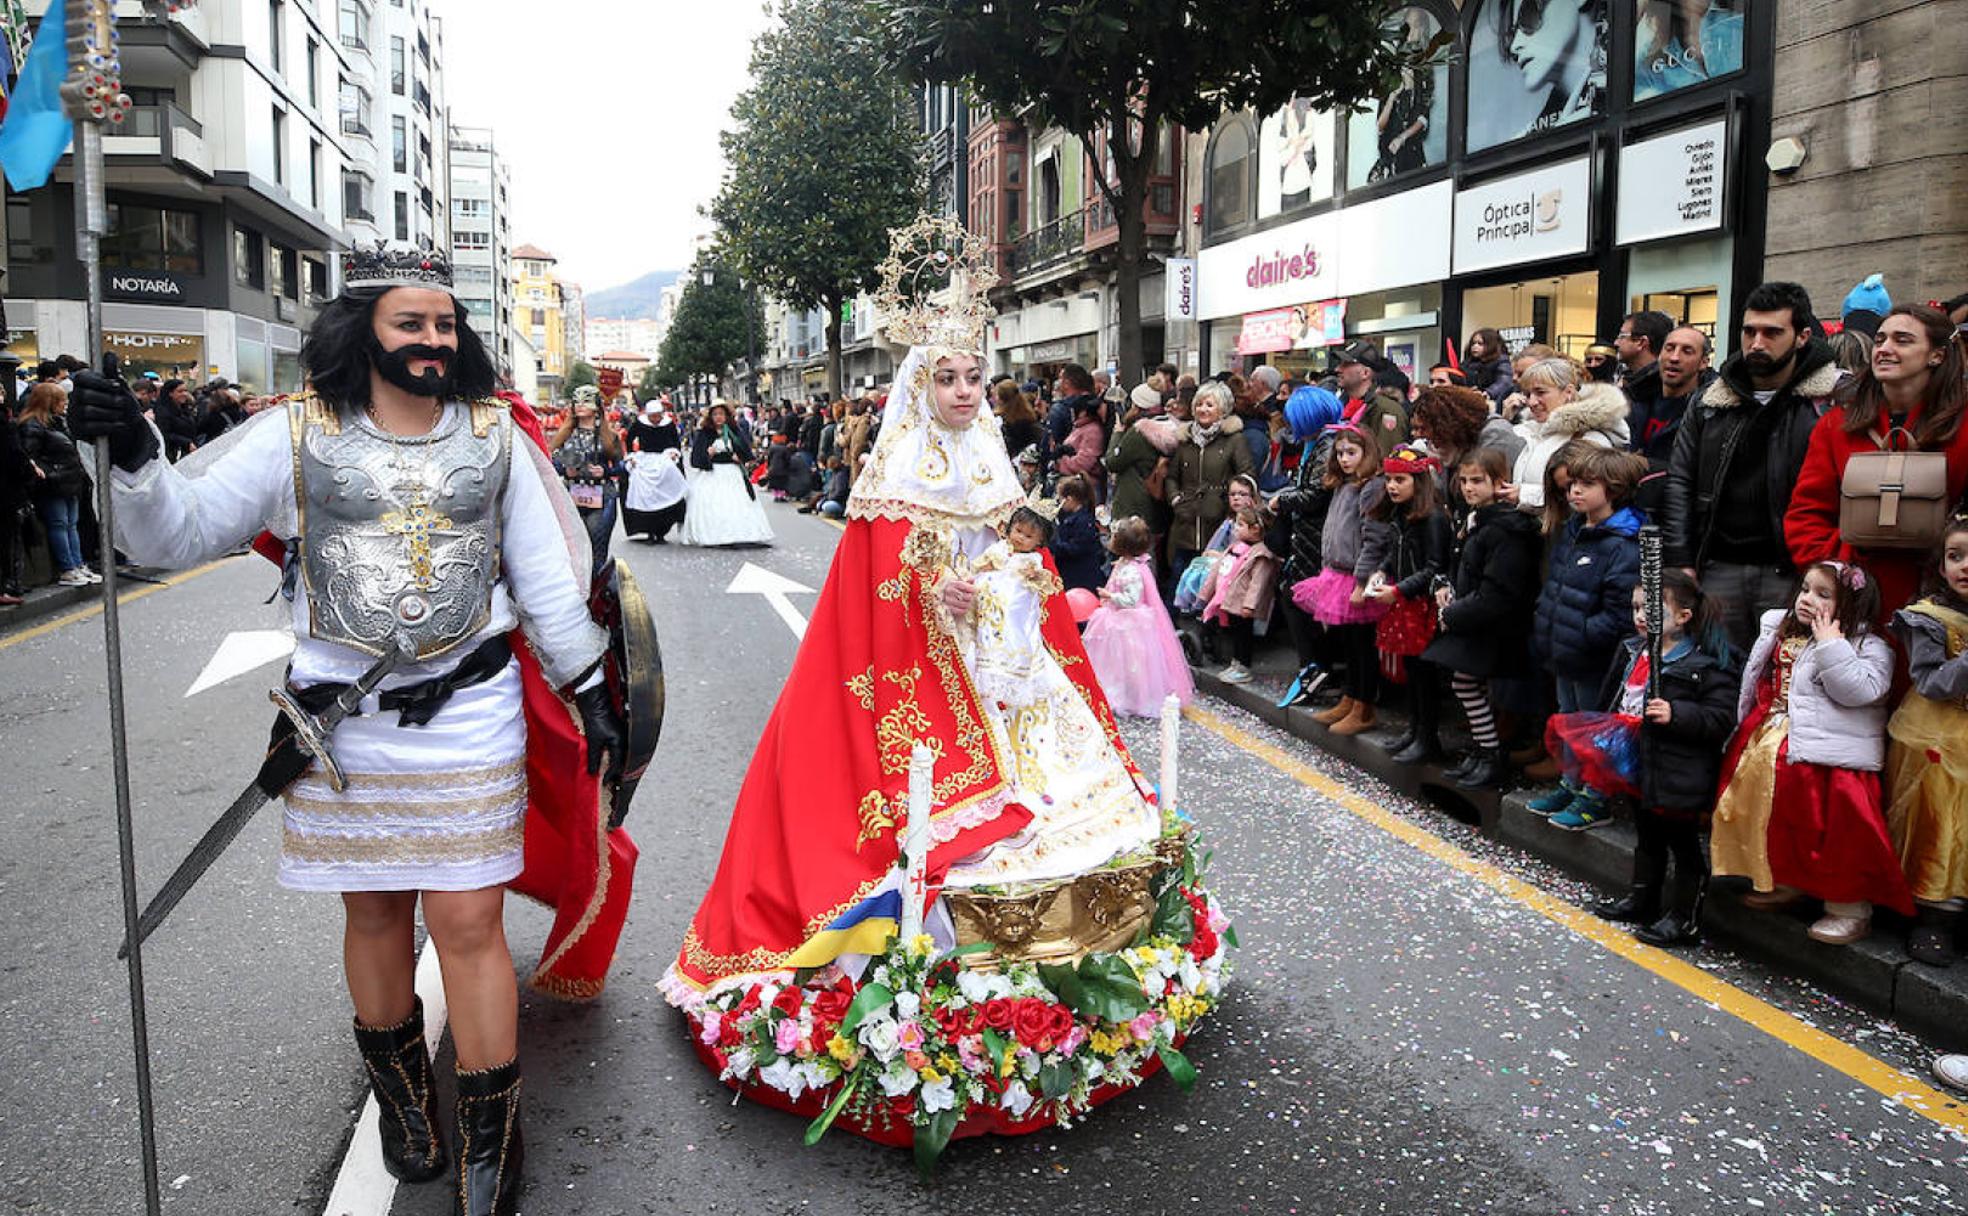 Noble Menagerry abogado Oviedo brilla por Carnaval | El Comercio: Diario de Asturias